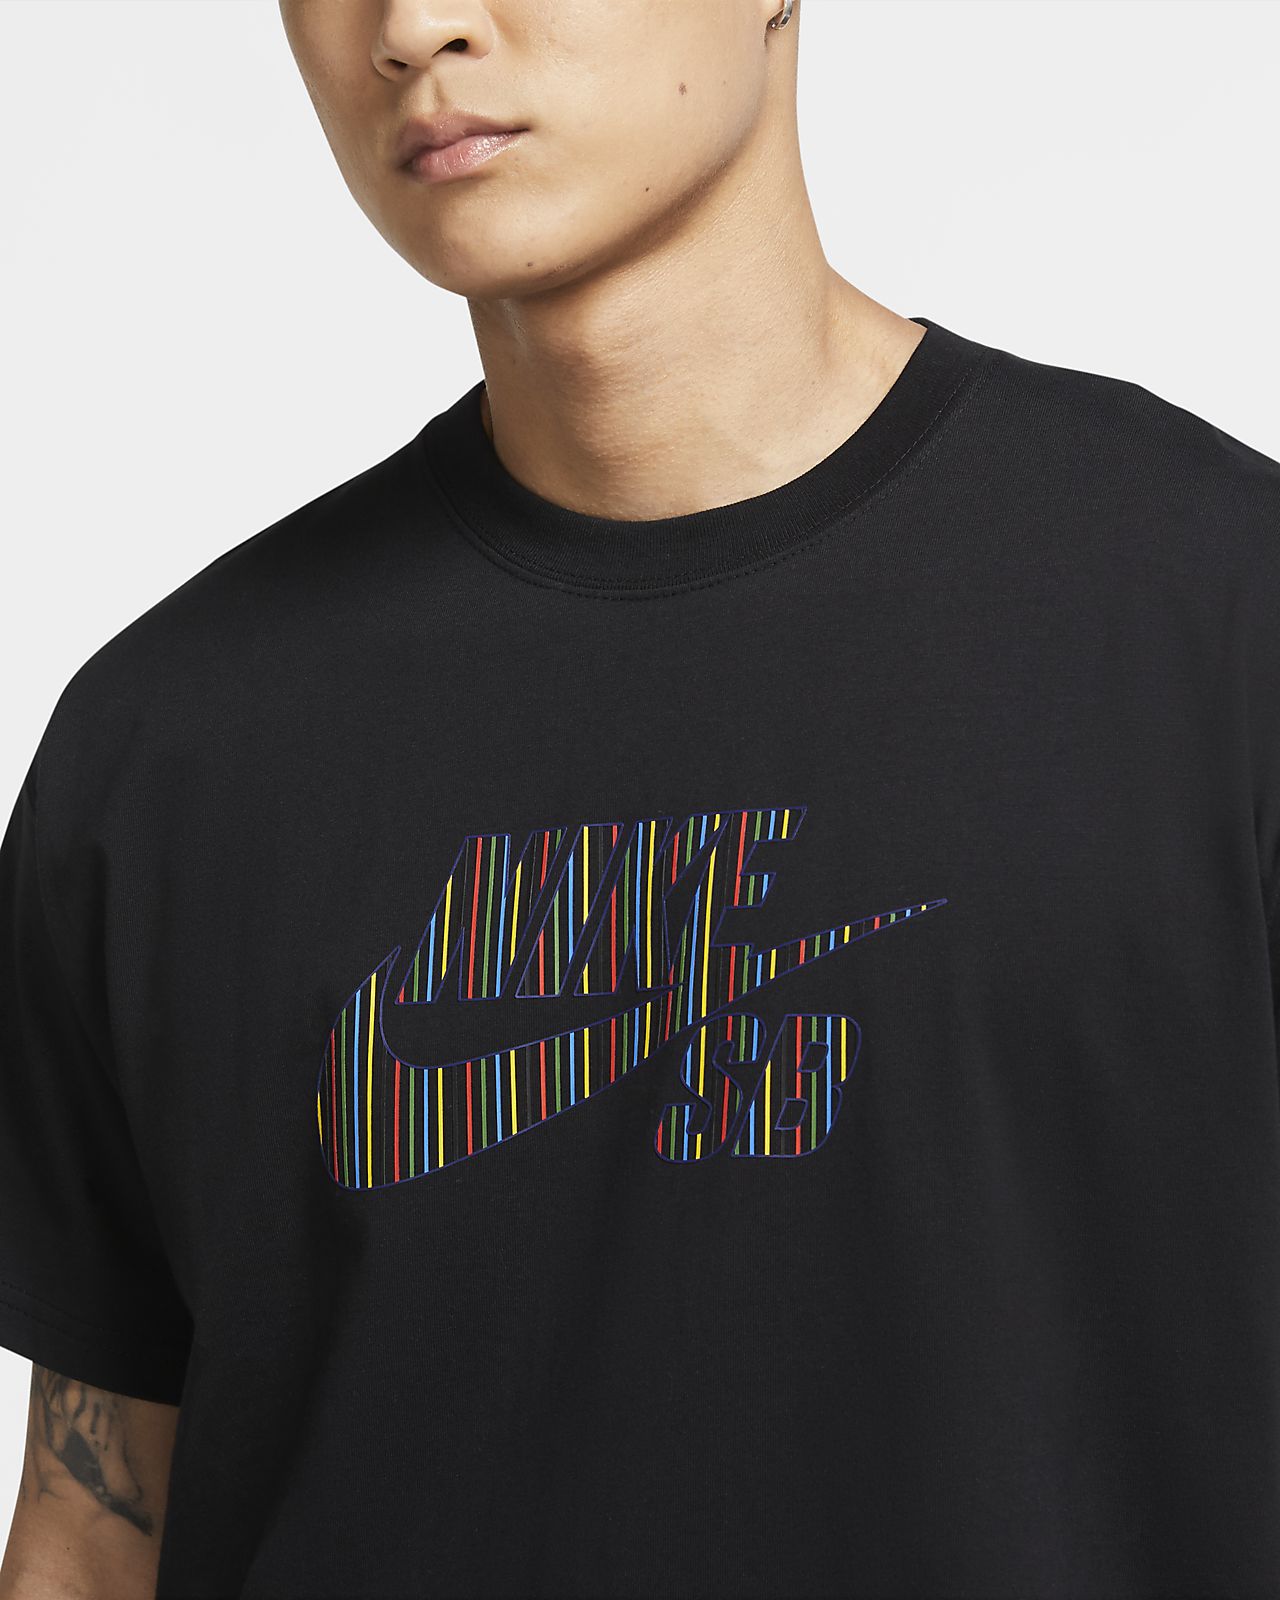 Nike公式 ナイキ Sb メンズ ロゴ スケートボード Tシャツ オンライン